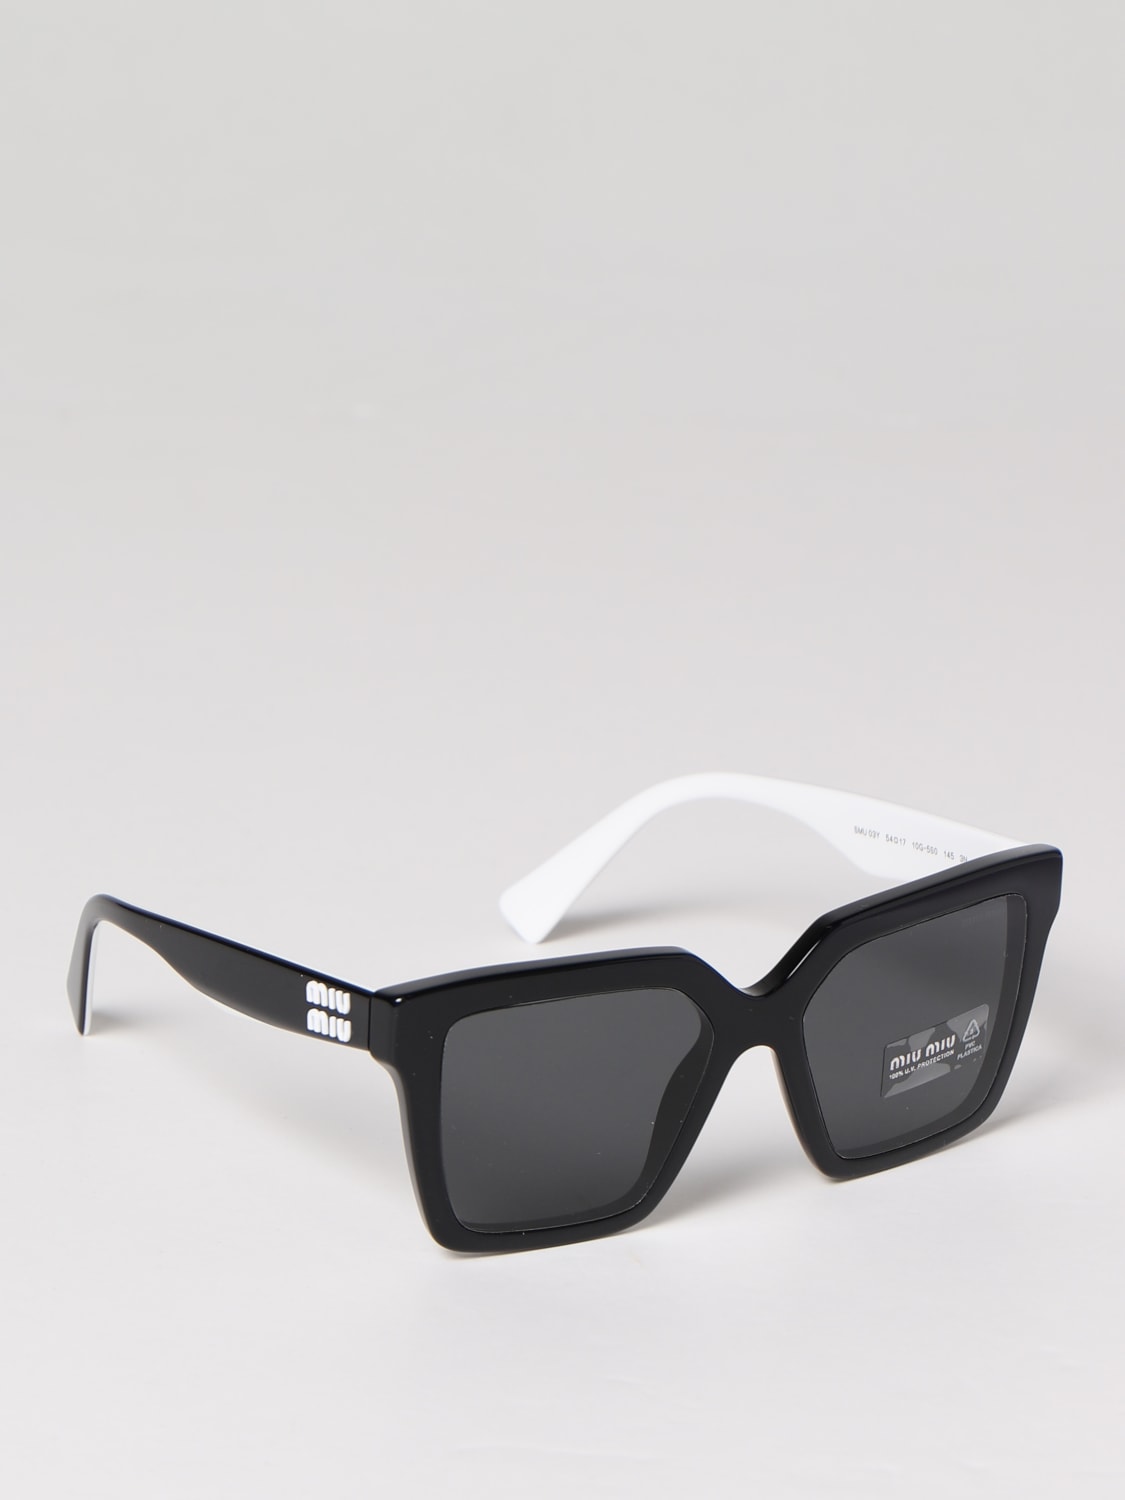 Sunglasses Miu Miu: Miu Miu sunglasses for women black 1 2